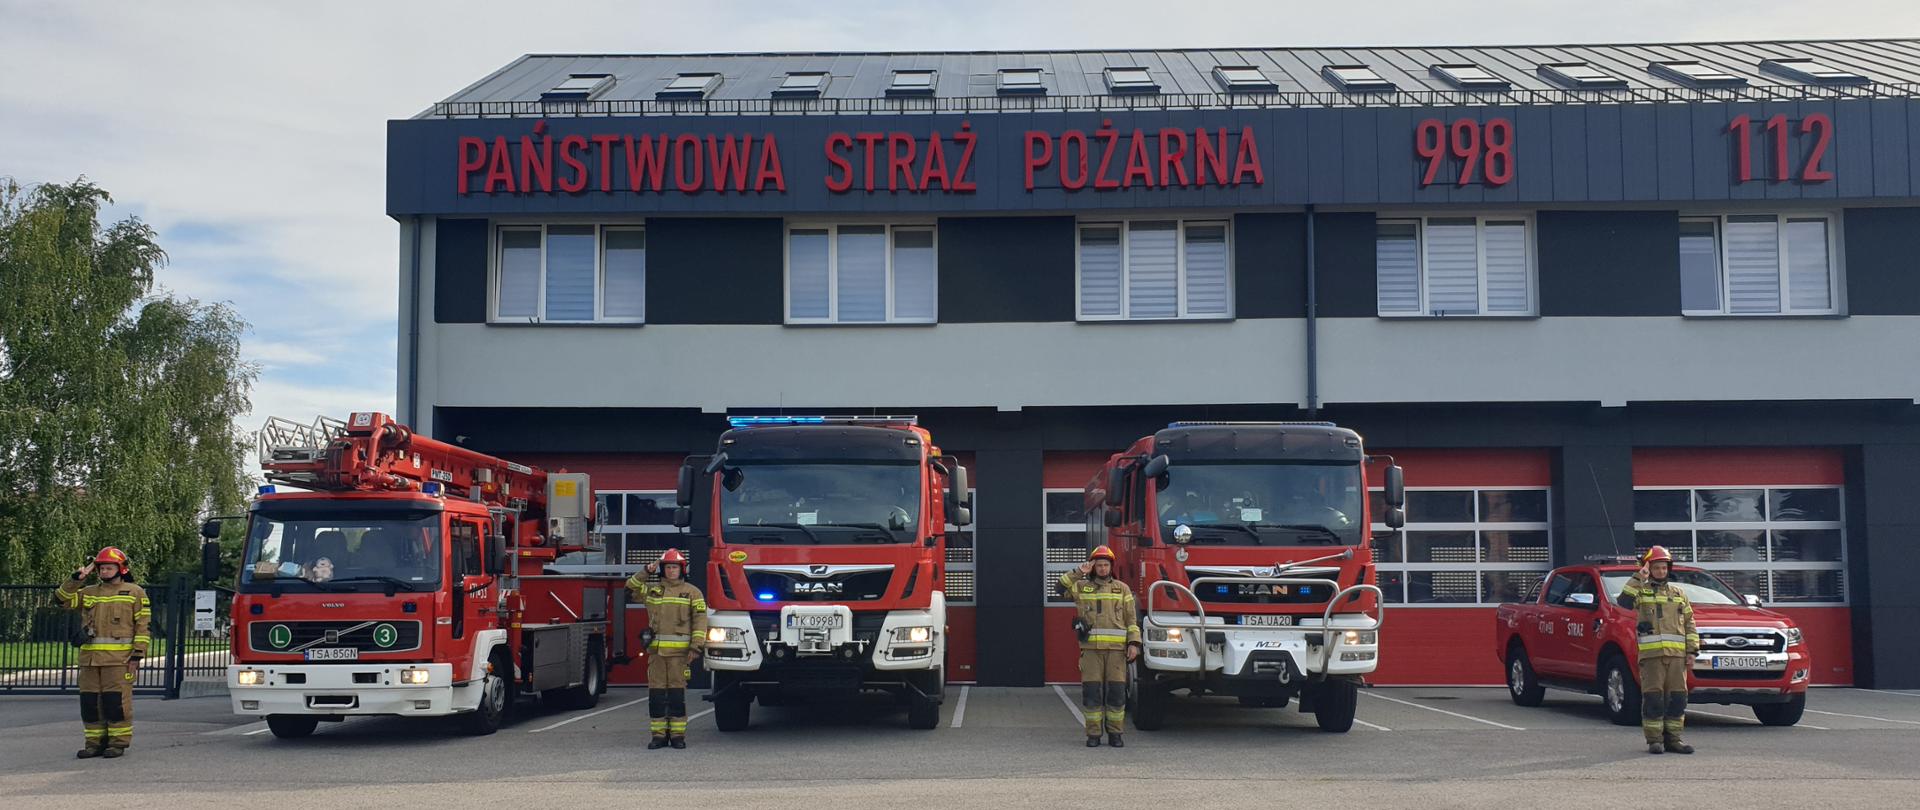 Zdjęcie przedstawia strażaków w ubraniach bojowych stojących na baczność w szeregu oddających hołd żołnierzom Powstania. W tle widać budynek Jednostki Ratowniczo- Gaśniczej a także samochody pożarnicze z włączonymi światłami drogowymi i świetlnymi.